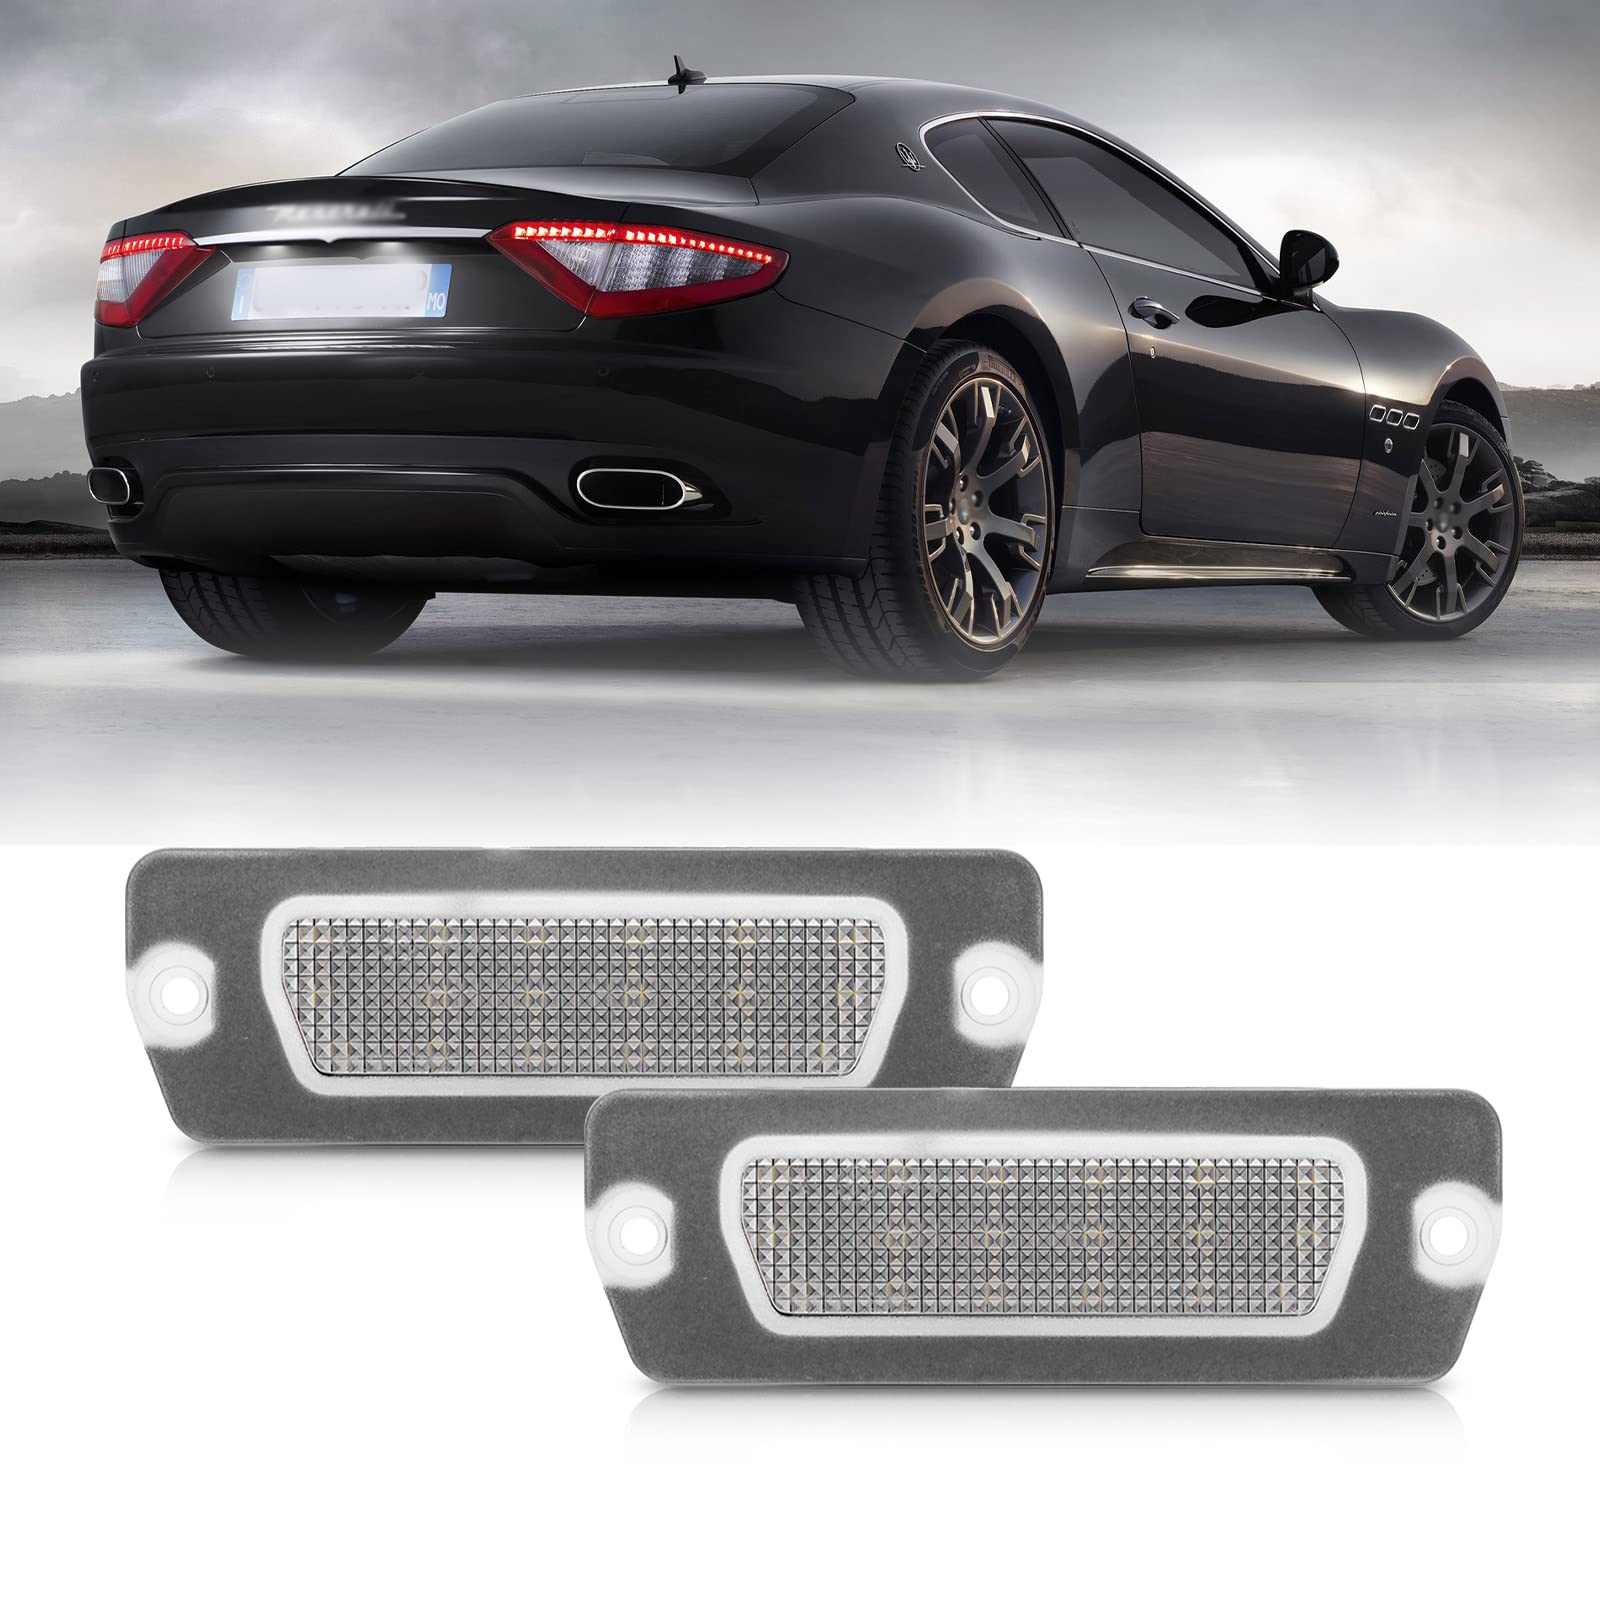 njssjd Canbus fehlerfreie LED-Kennzeichenbeleuchtung für Maserati Coupé 4200 4200 GT 01–07 GranTurismo 07-up GranCabrio 10-up Heckleuchte OEM: 198231 von njssjd